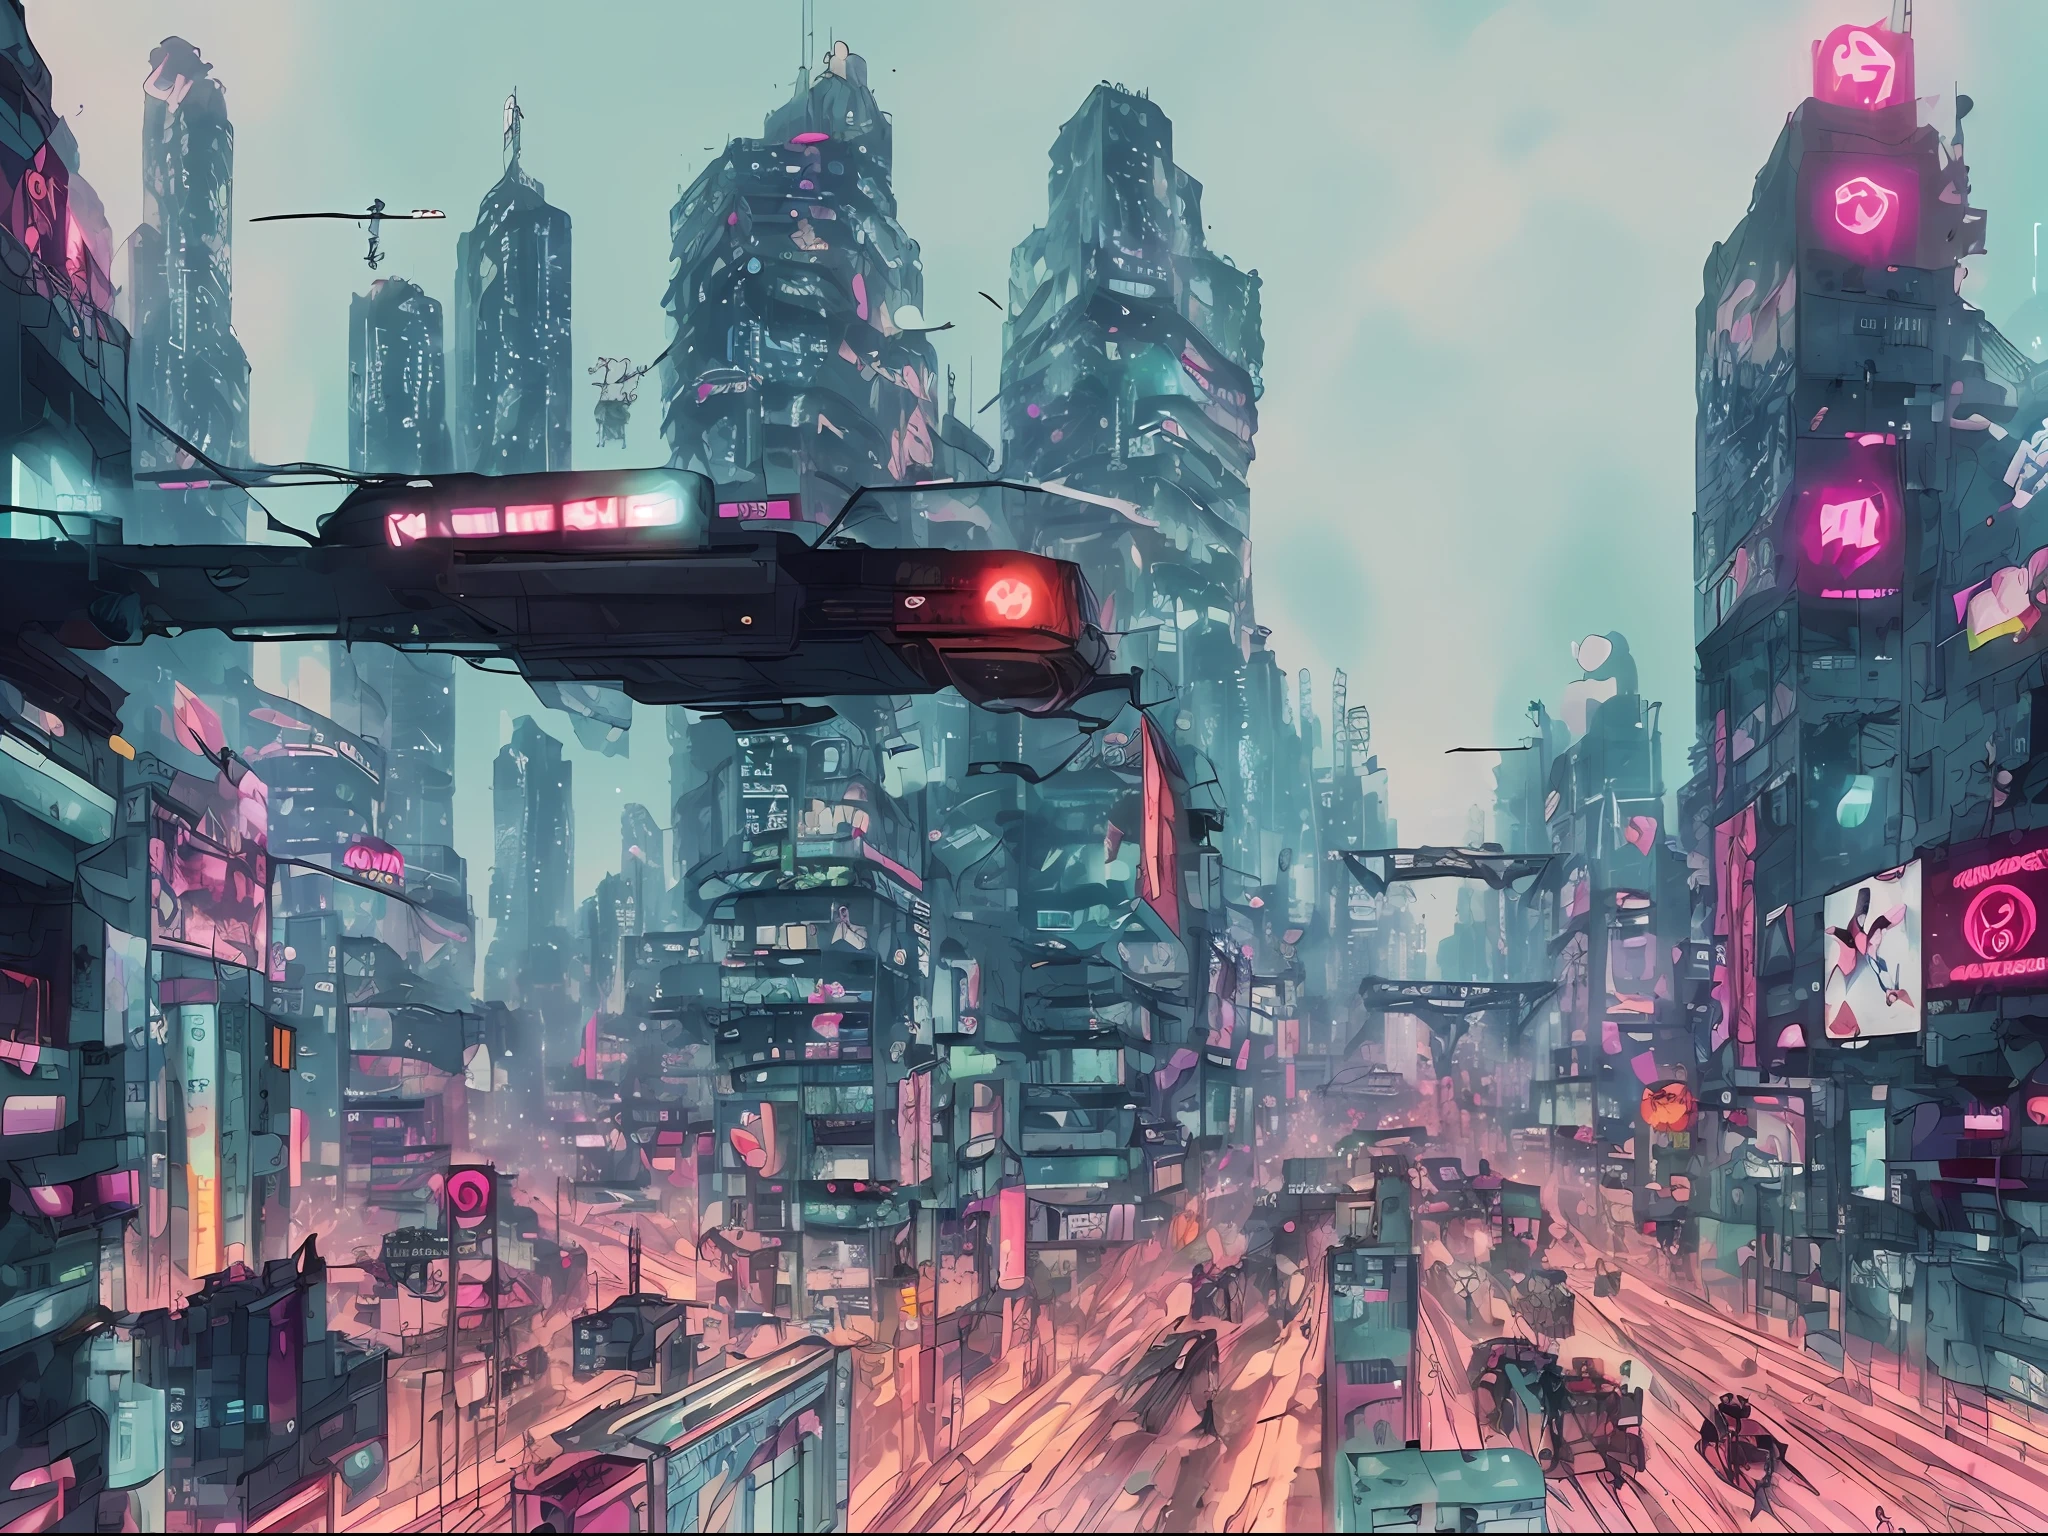 (傑作), (最好的品質), (超詳細), (插圖), (塔羅牌), (賽博朋克), (植物), (美麗的) - V6 動漫風格的阿麗塔戰鬥天使城市被巨大的紅色機器人入侵，而其居民則全神貫注地看著